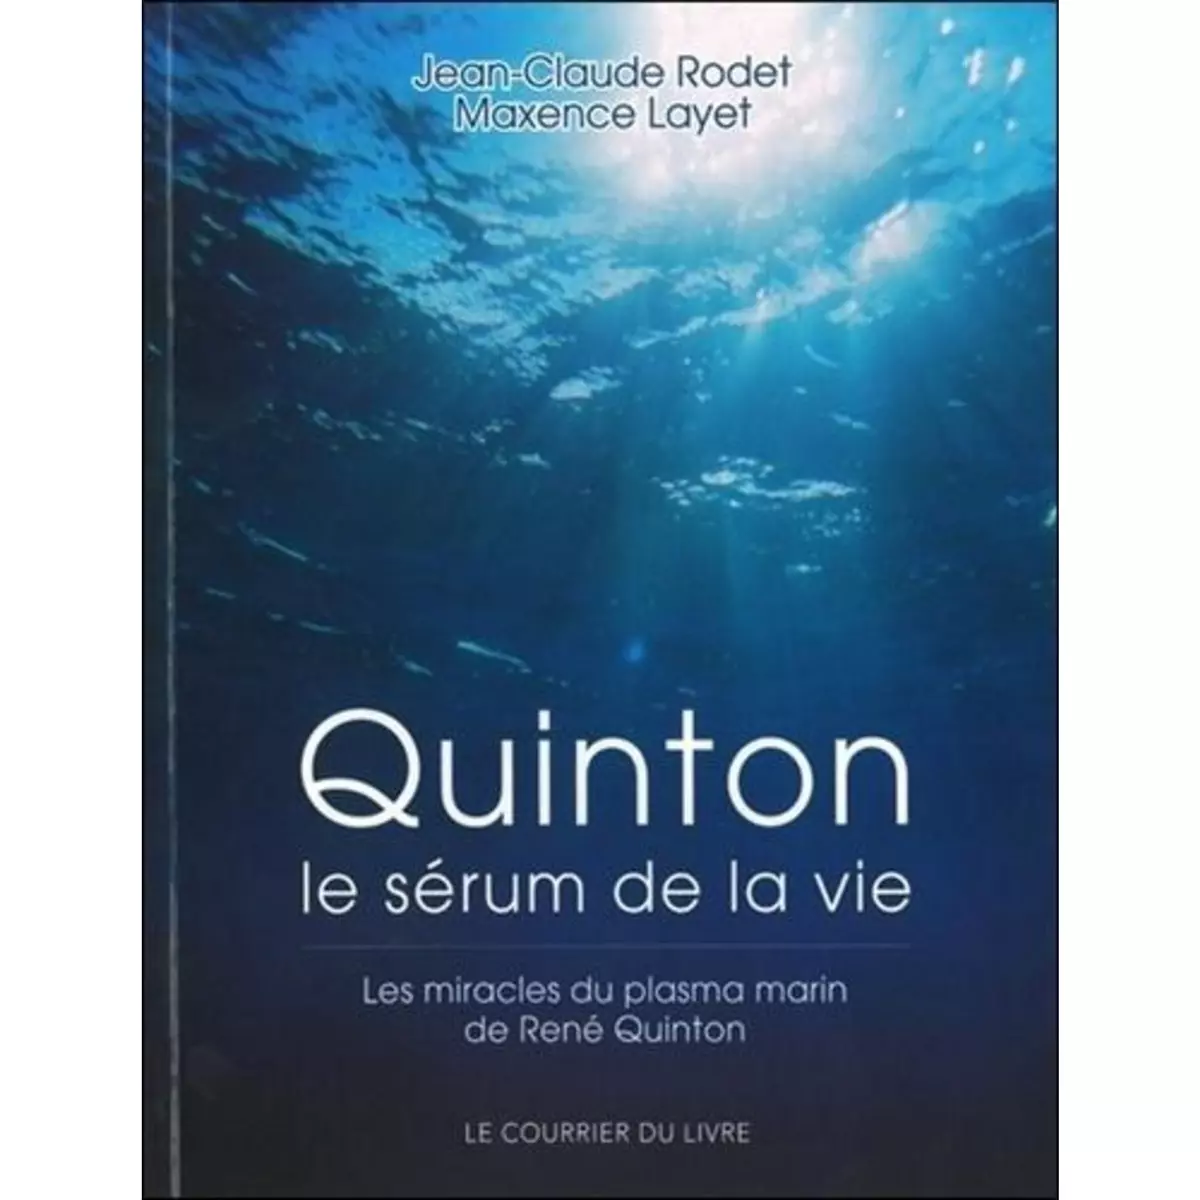  QUINTON. LE SERUM DE LA VIE, Rodet Jean-Claude